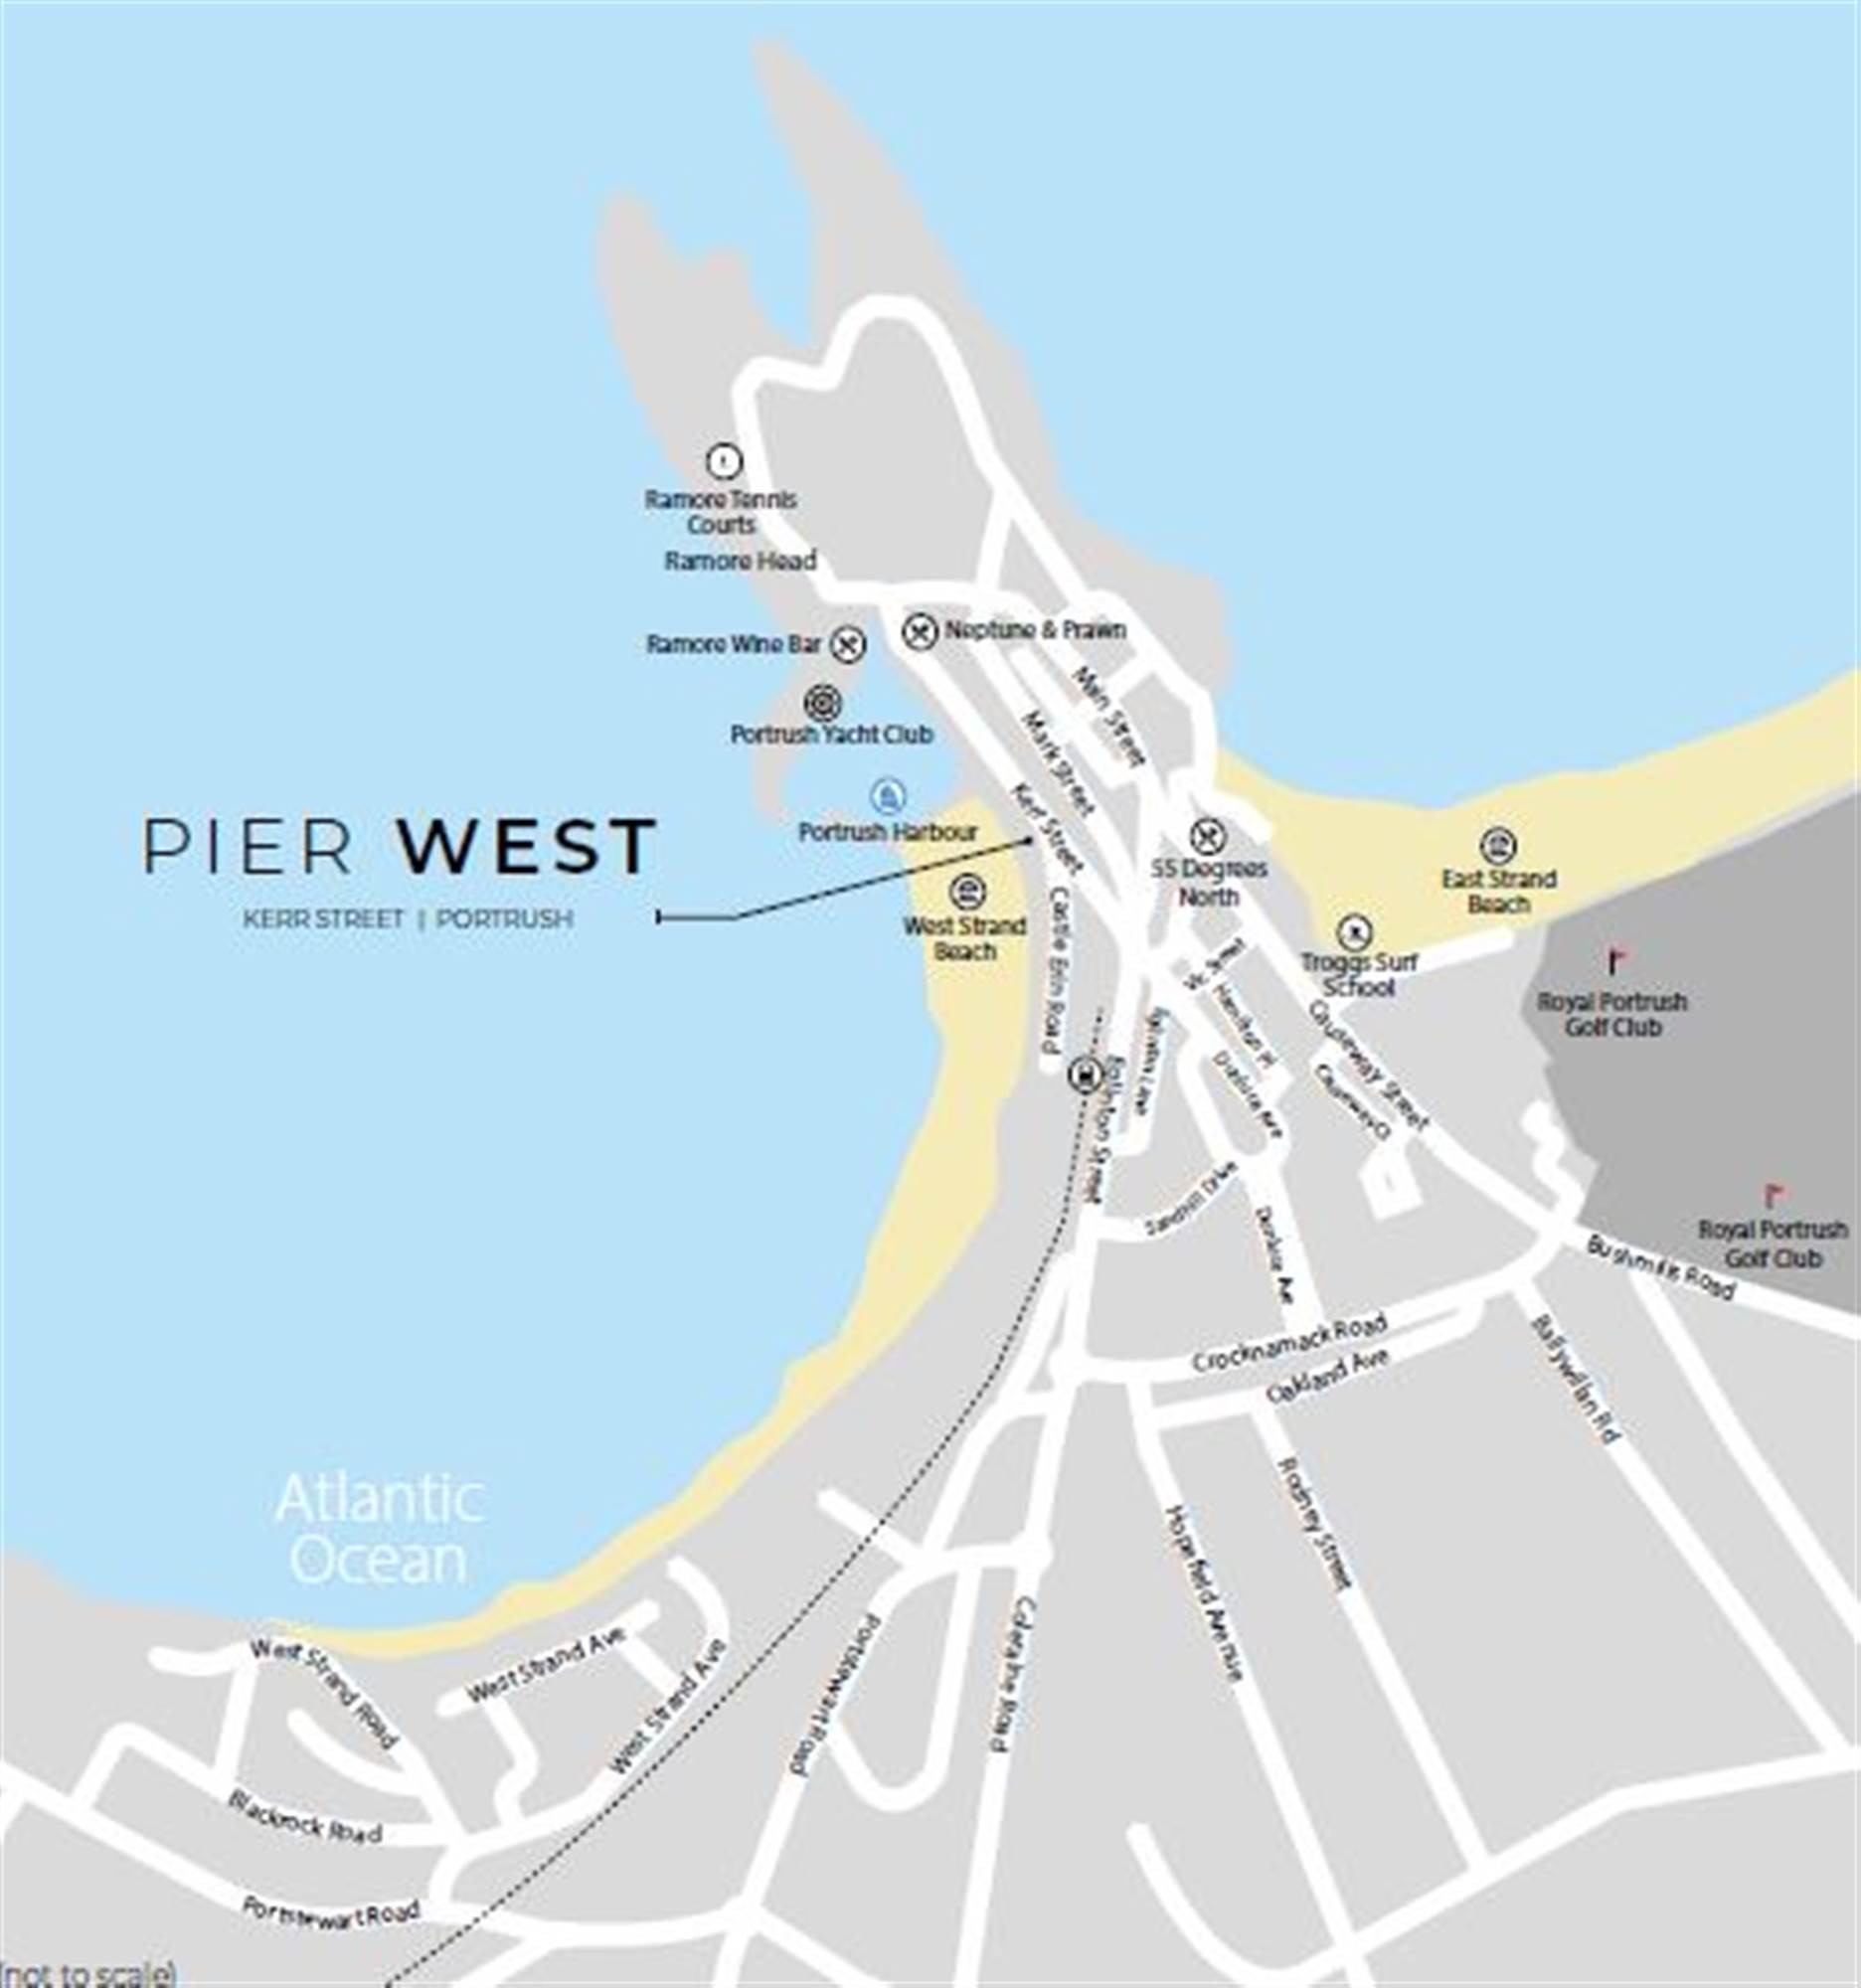 1 Pier West